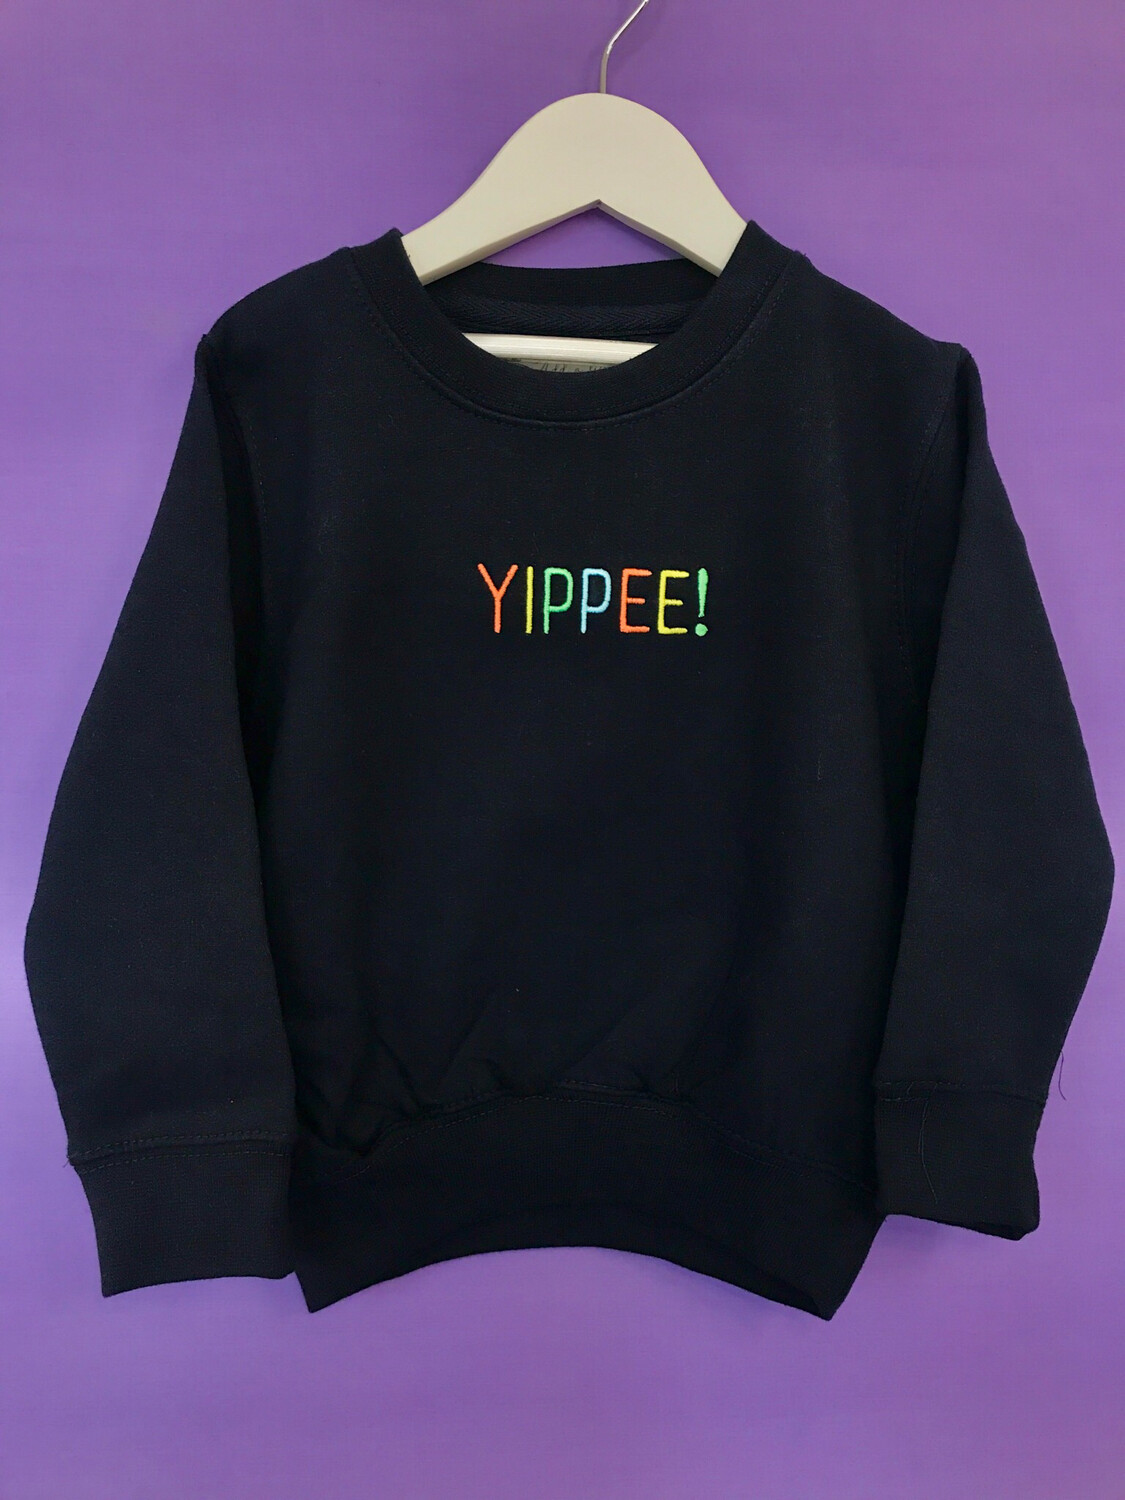 'YIPPEE!' Customisable Children's Sweatshirt